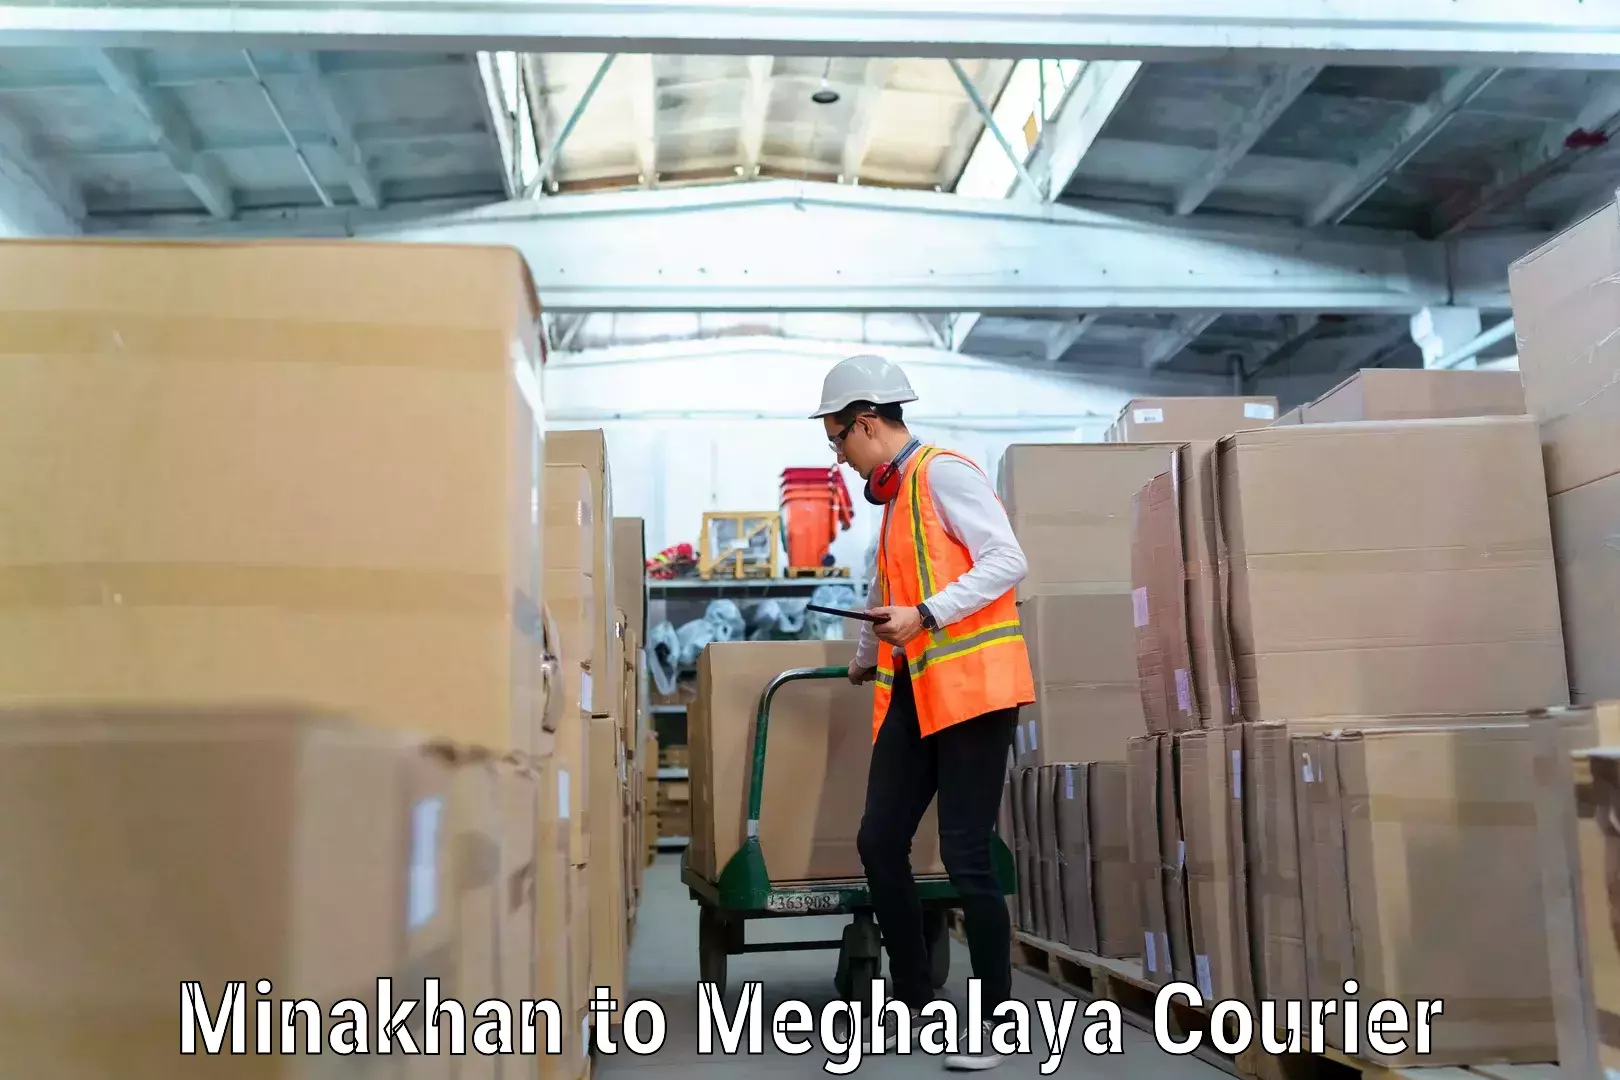 Furniture transport and storage in Minakhan to Meghalaya